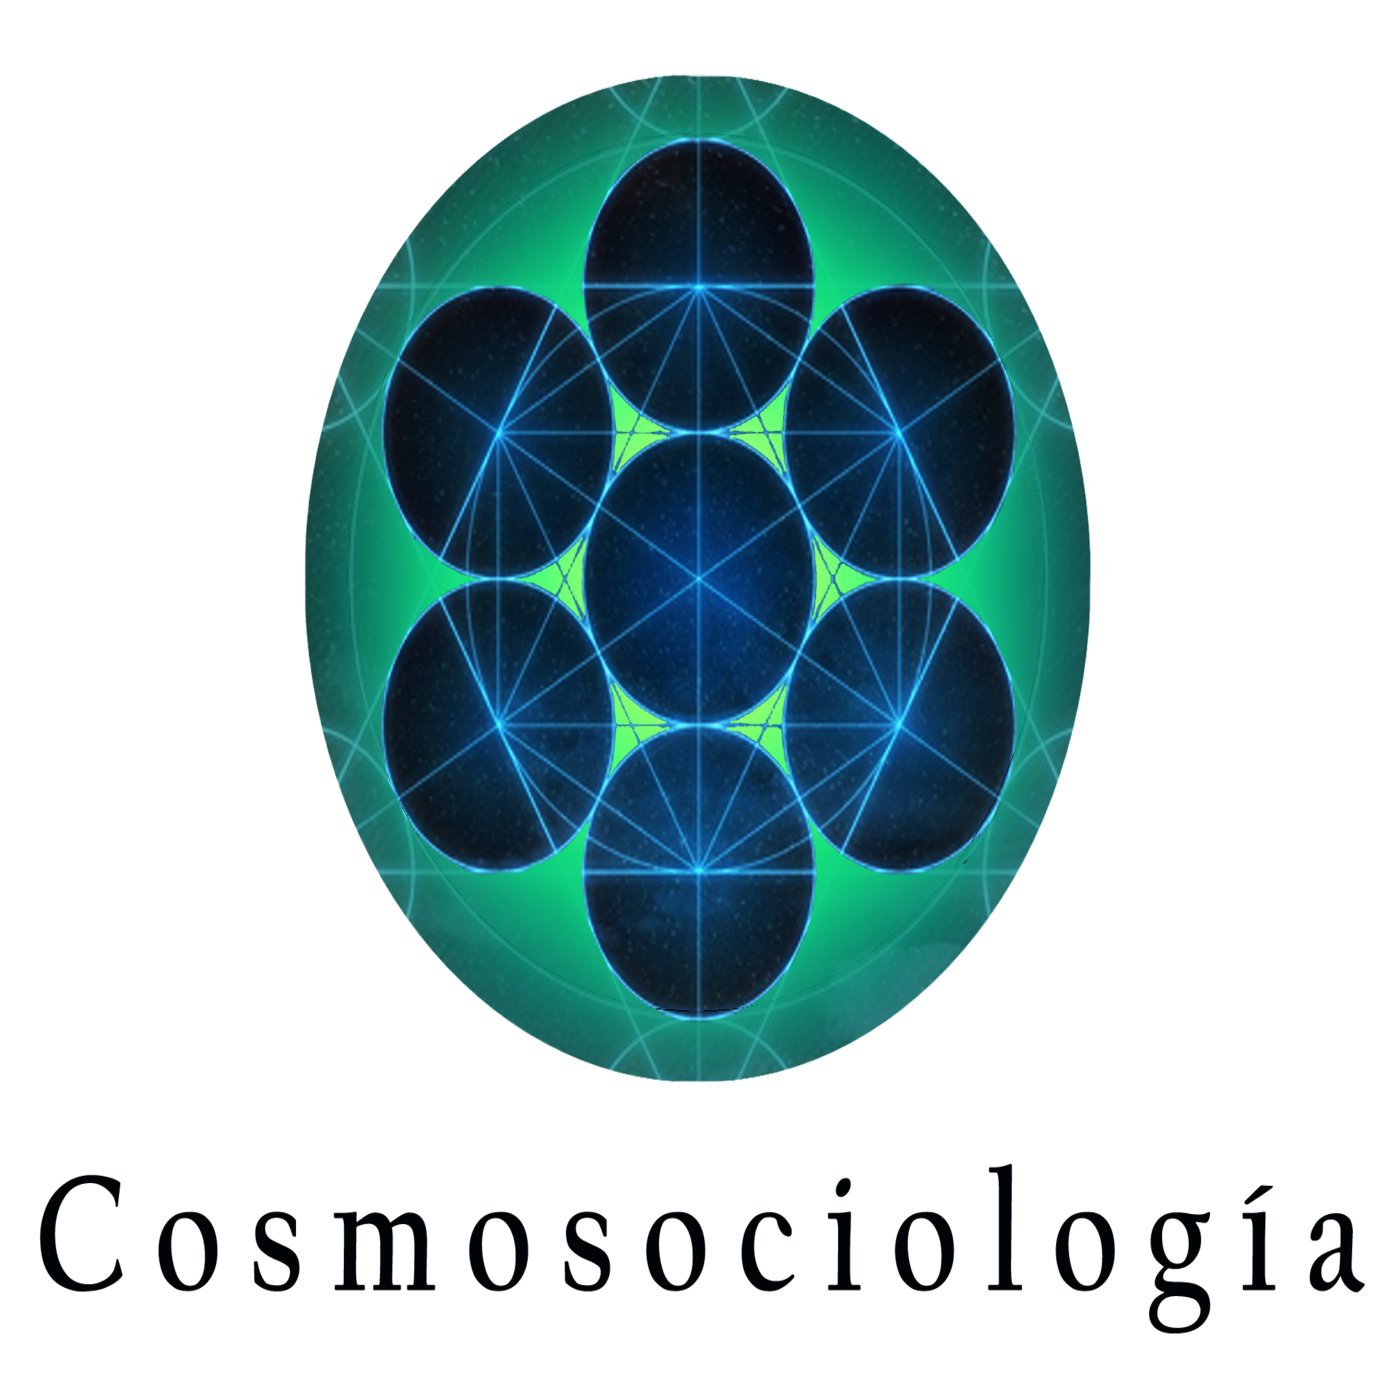 Cosmo Sociología